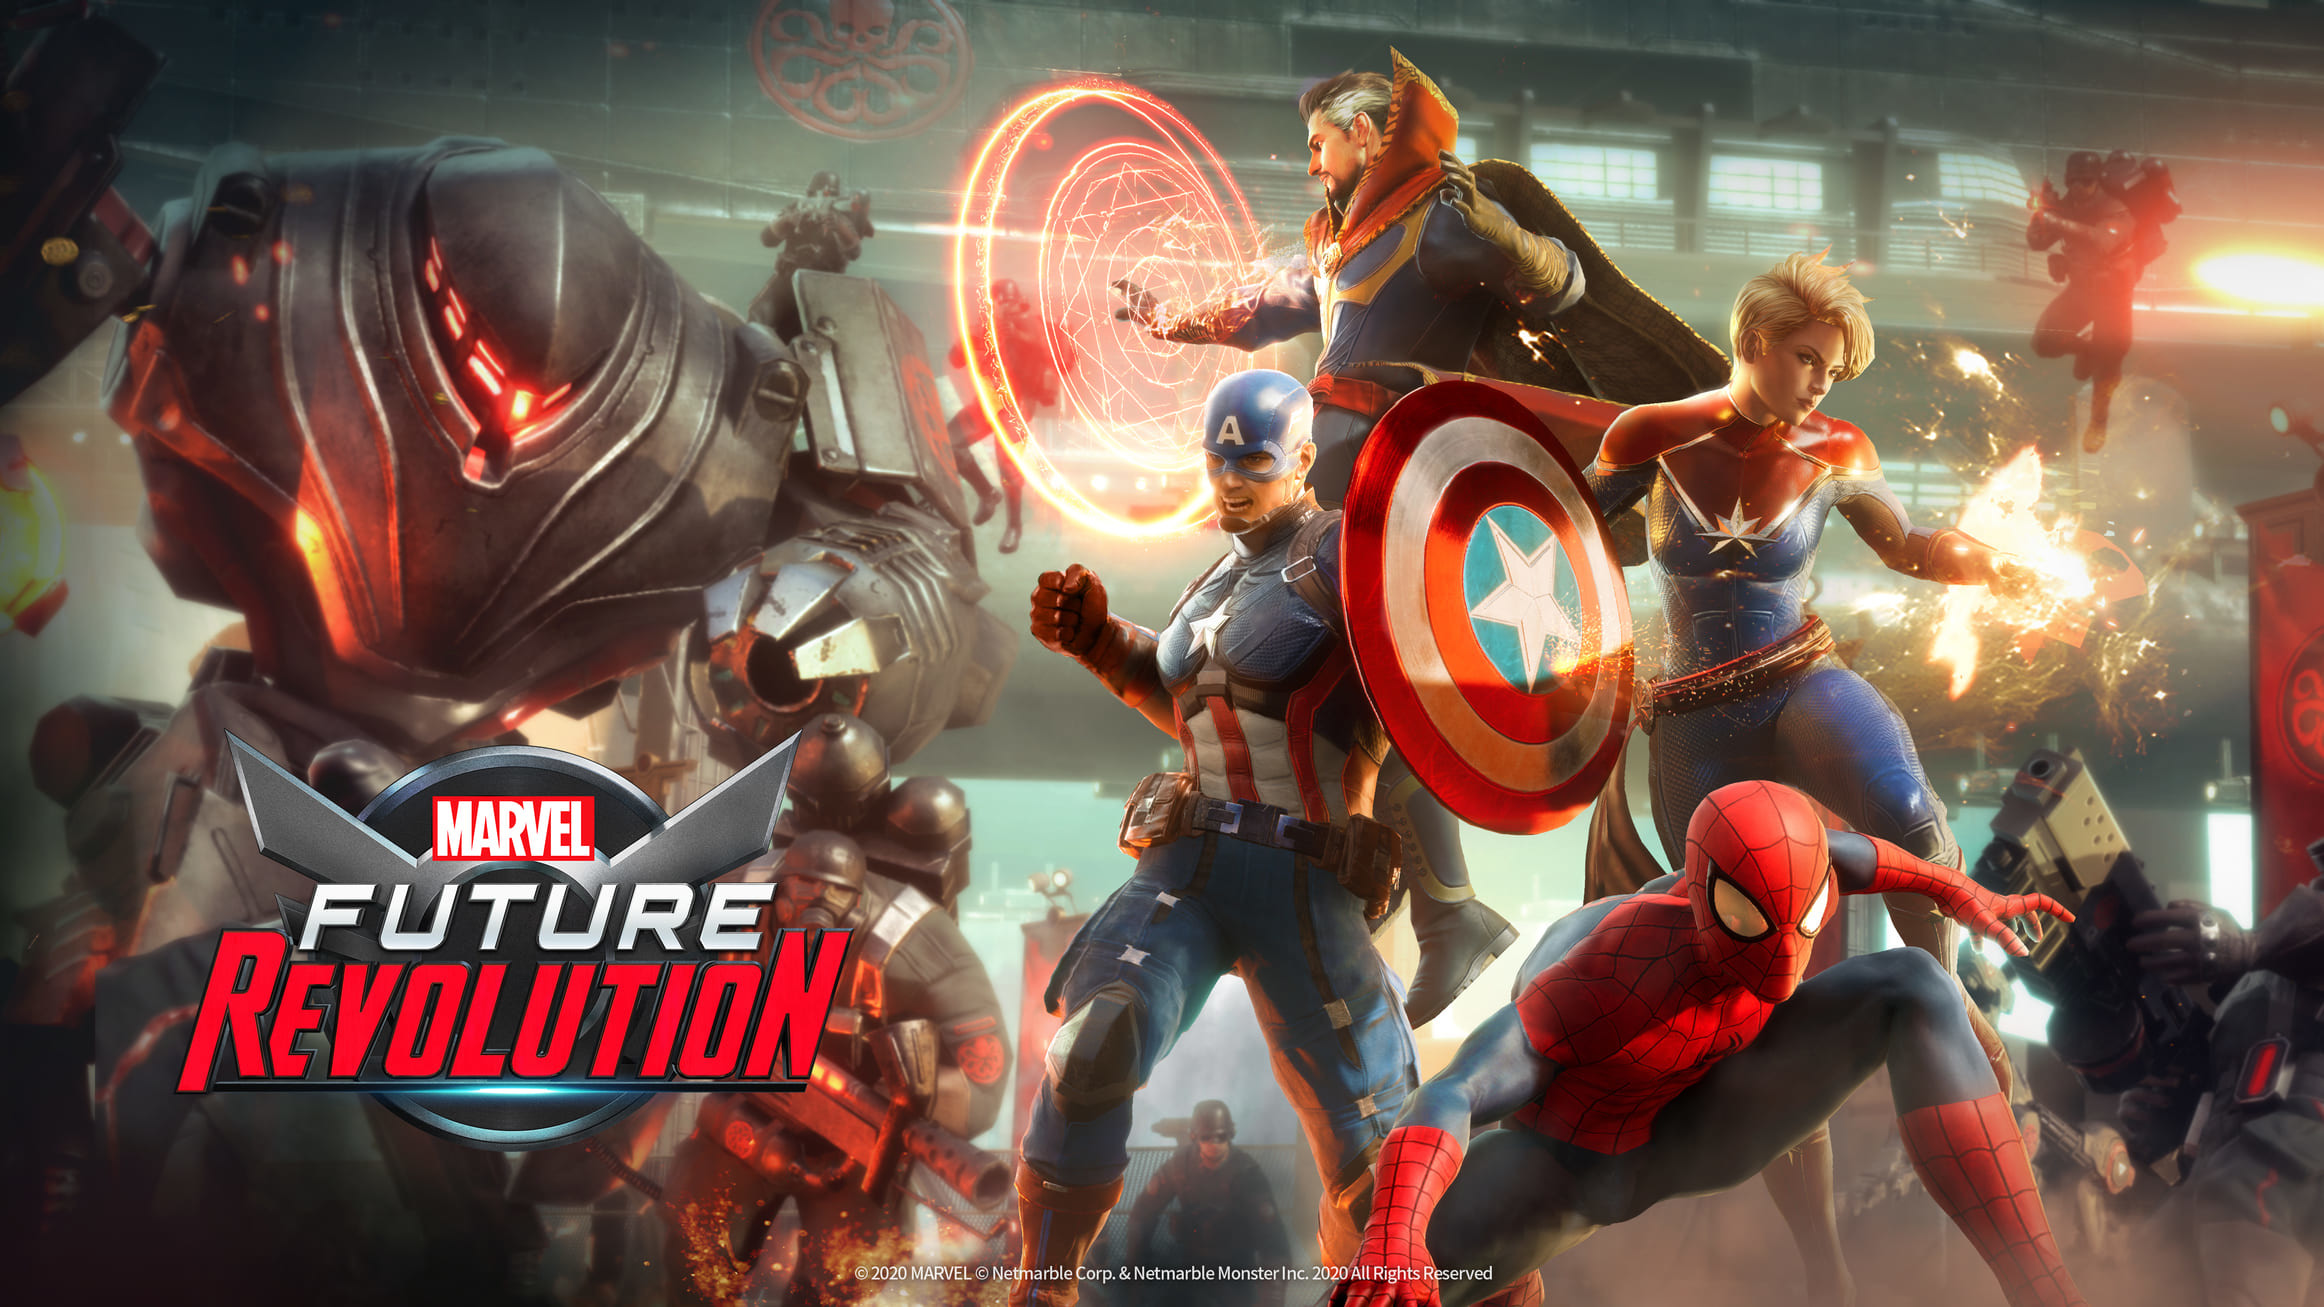 開放世界rpg Marvel Future Revolution 製作人專訪攜手超級英雄團隊捍衛宇宙 Marvel Future Revolution 巴哈姆特